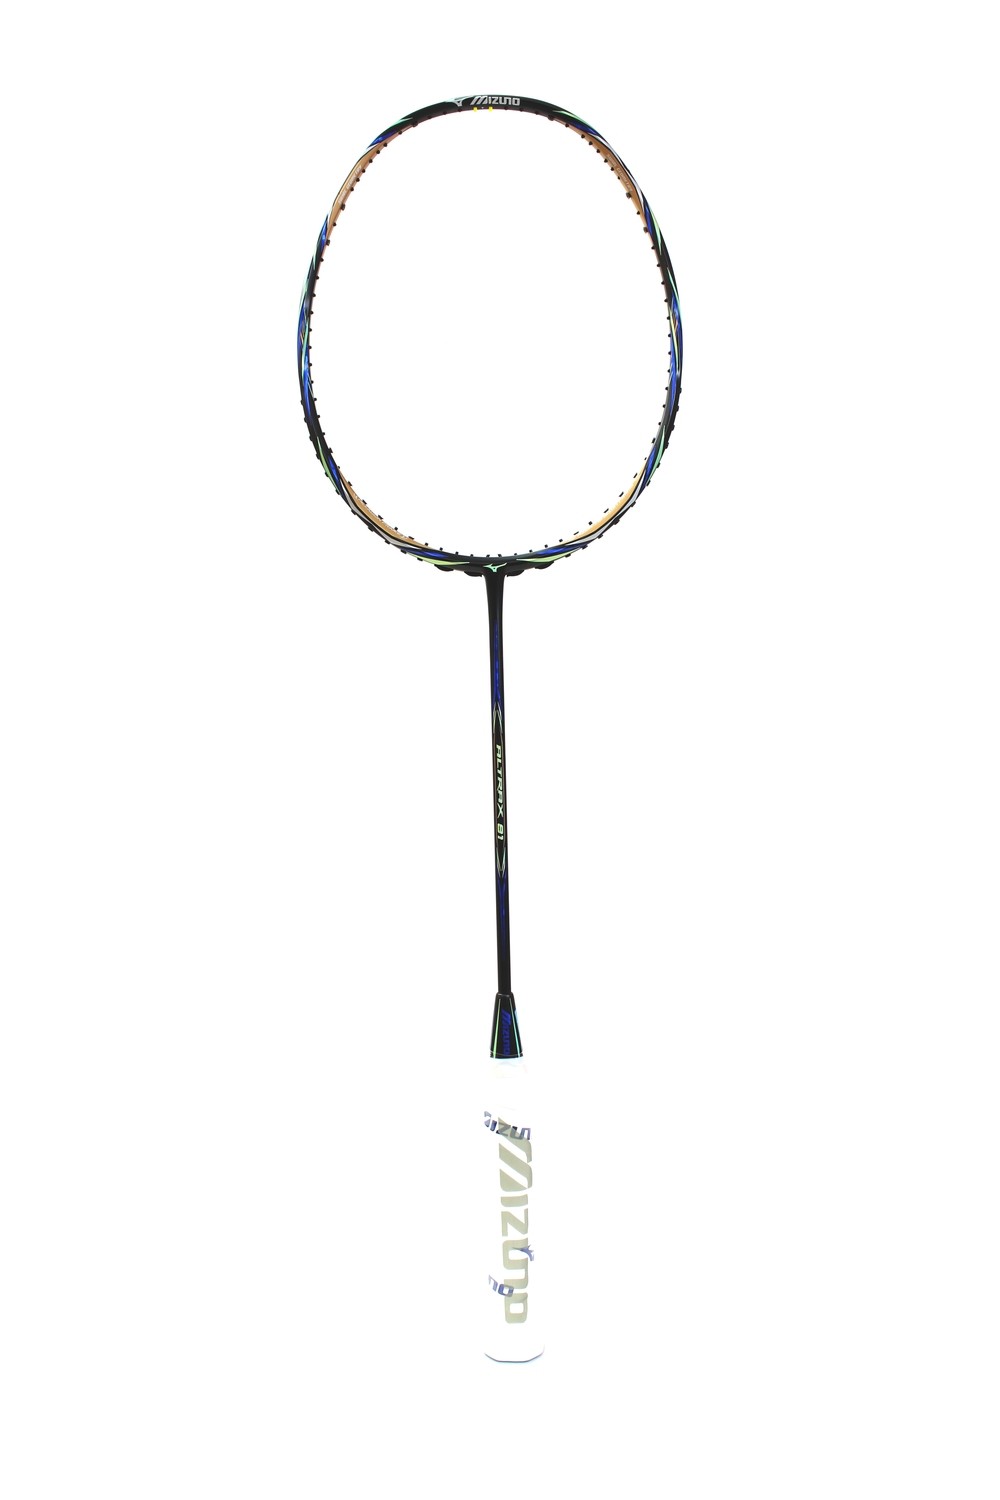 Mizuno Altrax 81 Black Badminton Racquet